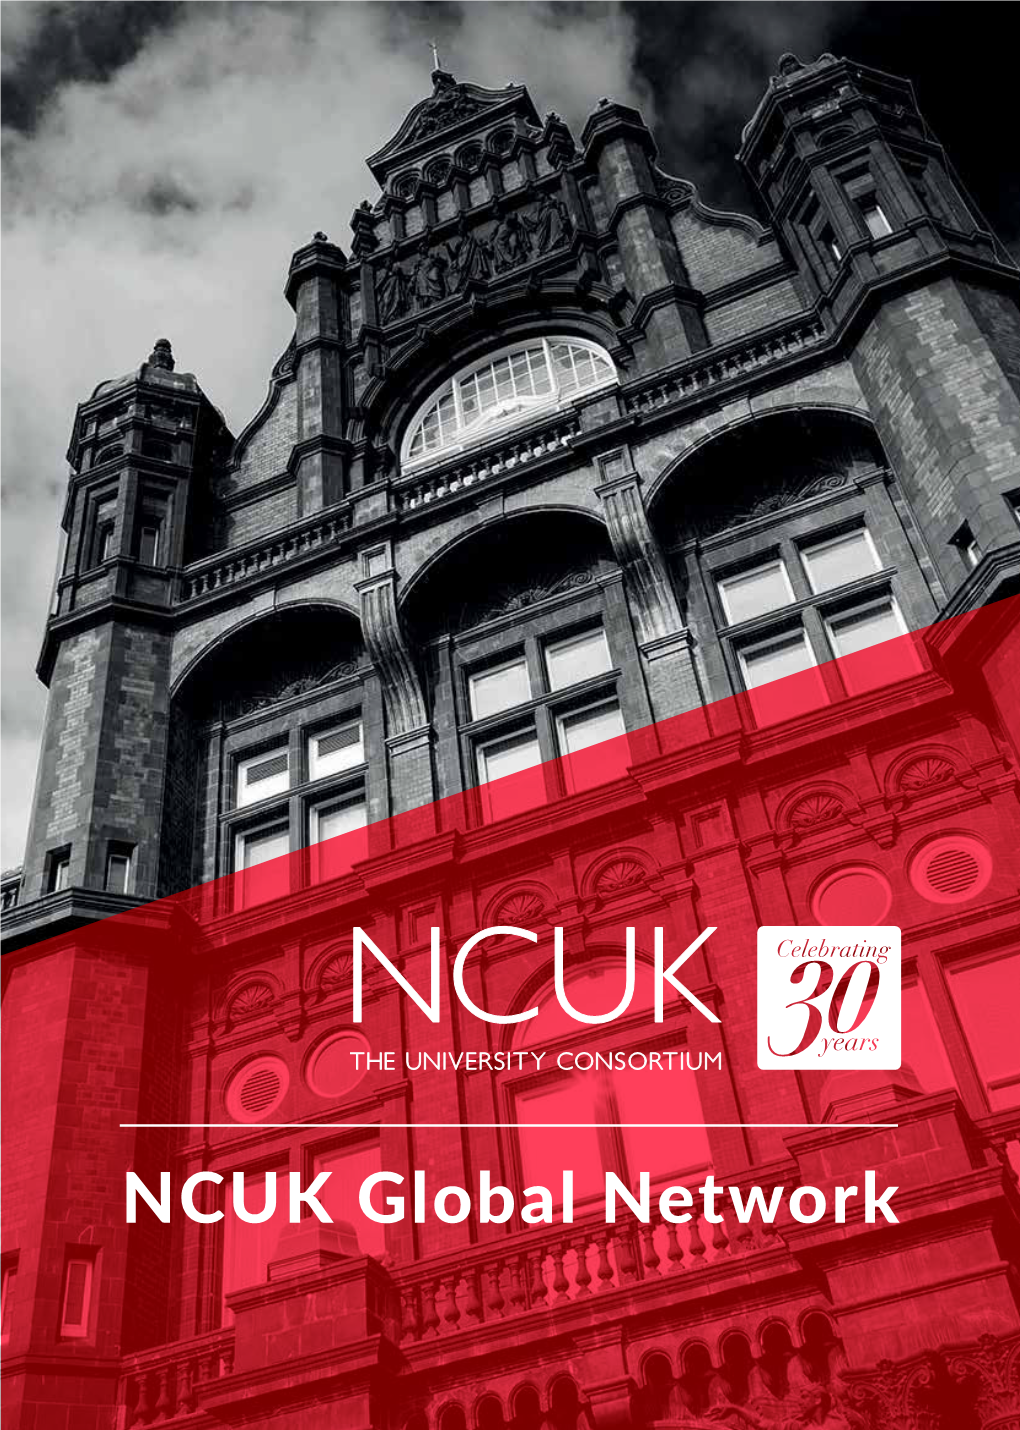 NCUK Global Network